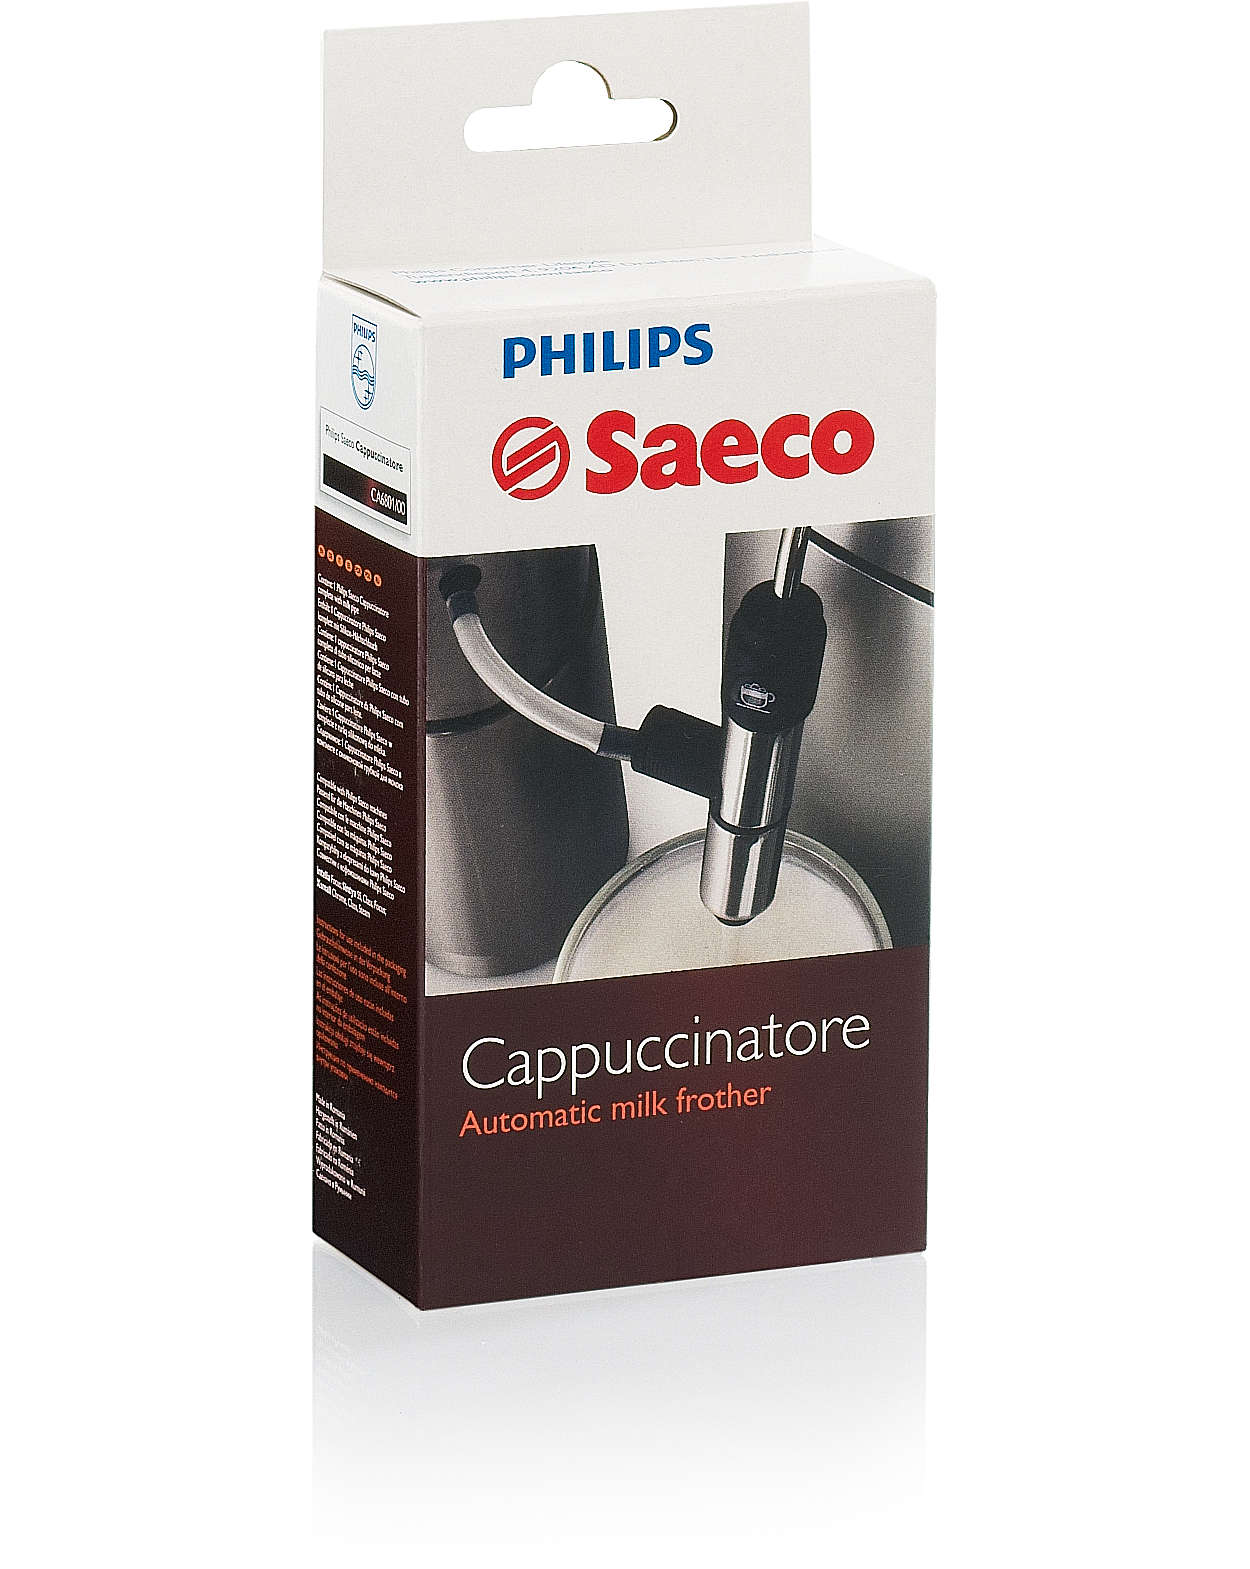 原創義式 Cappuccinatore 奶泡器是您的 Saeco 良伴